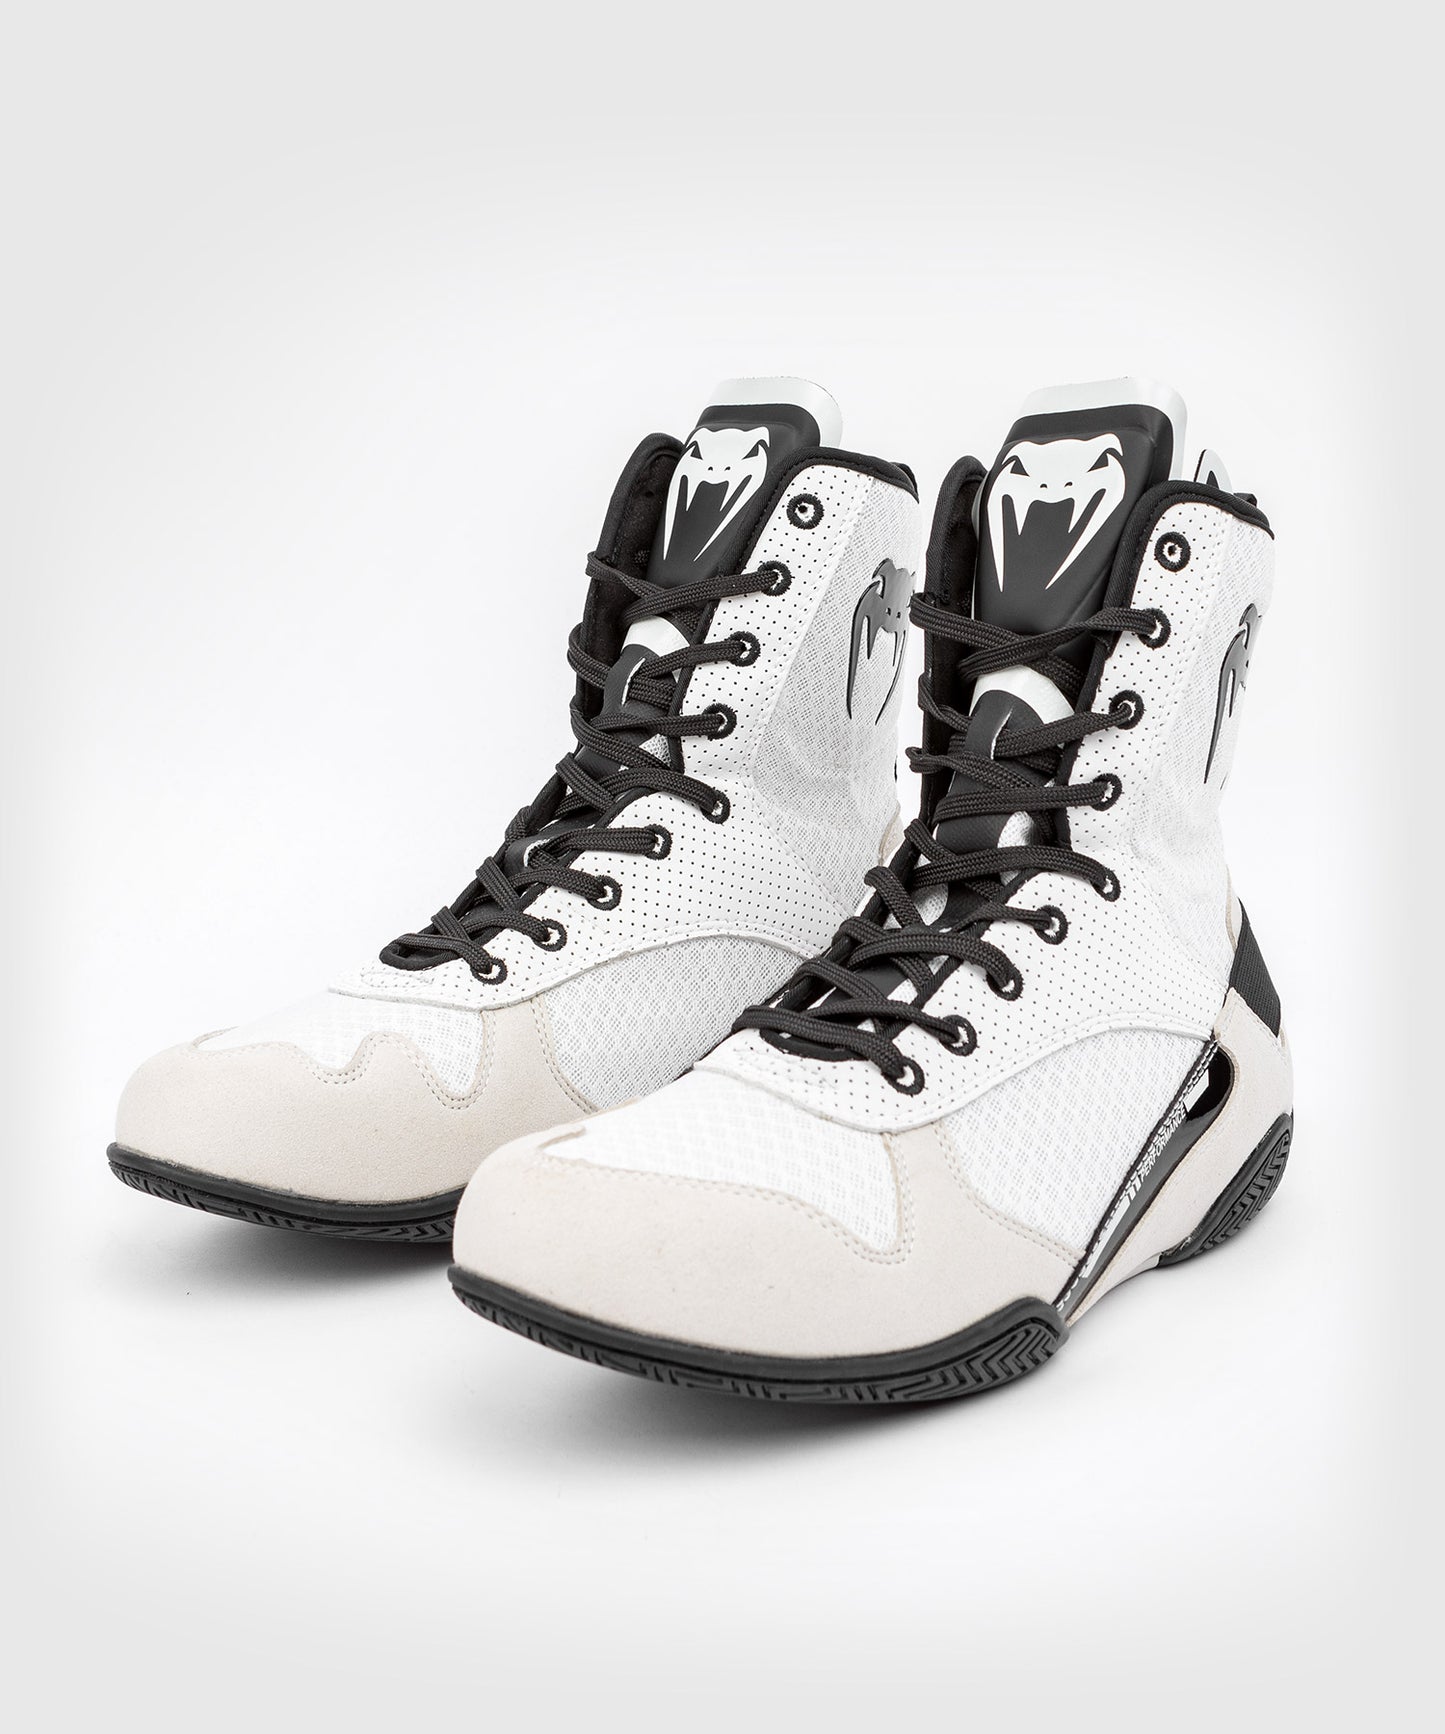 Chaussures de Taekwondo Sport Boxe Kung Fu Taichi Chaussures Pour Hommes Et  Femmes Enfants (42)